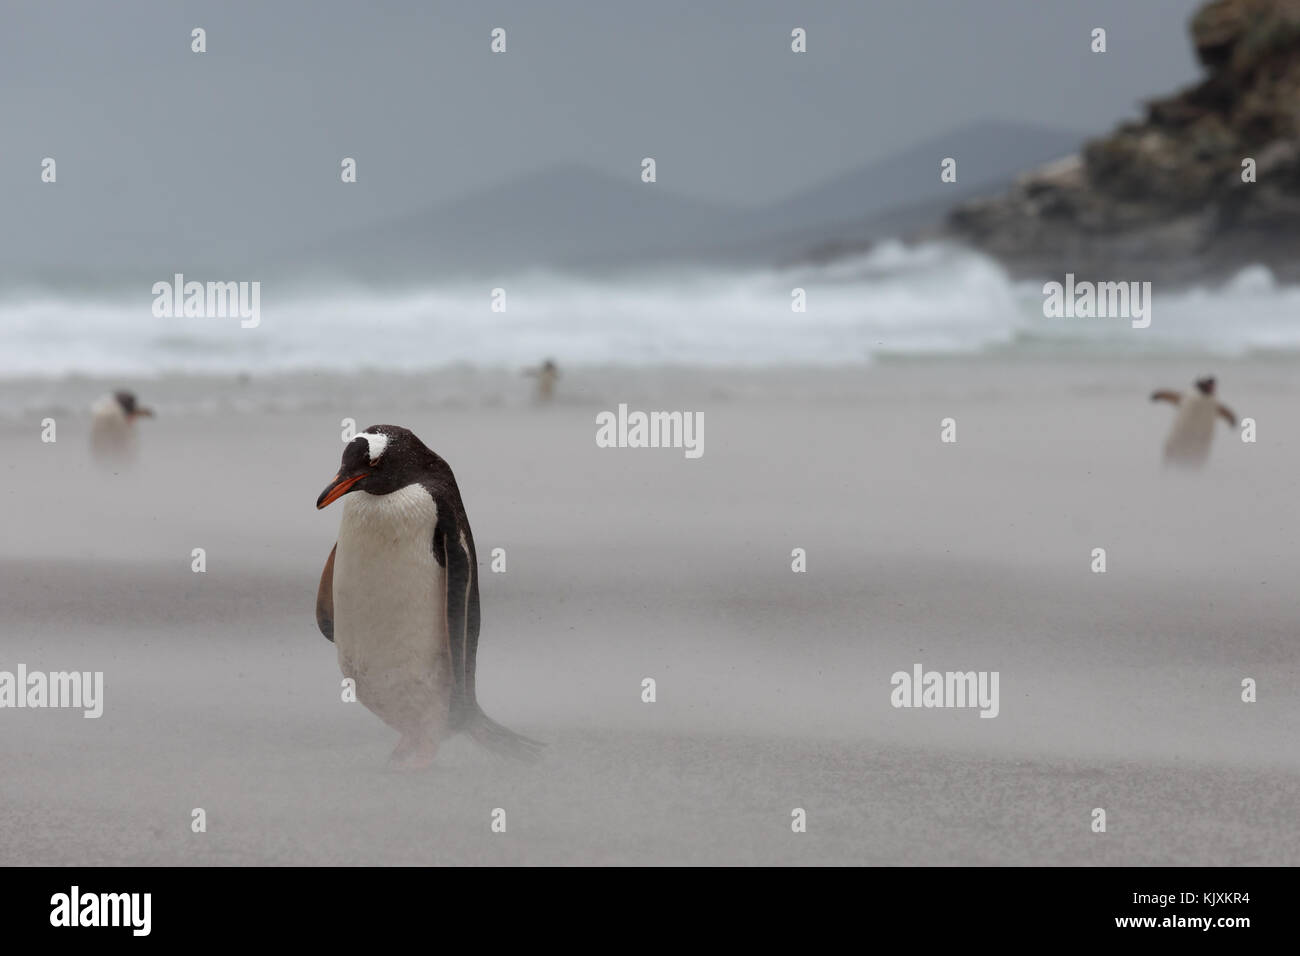 Pinguin in Sandstorm Stockfoto